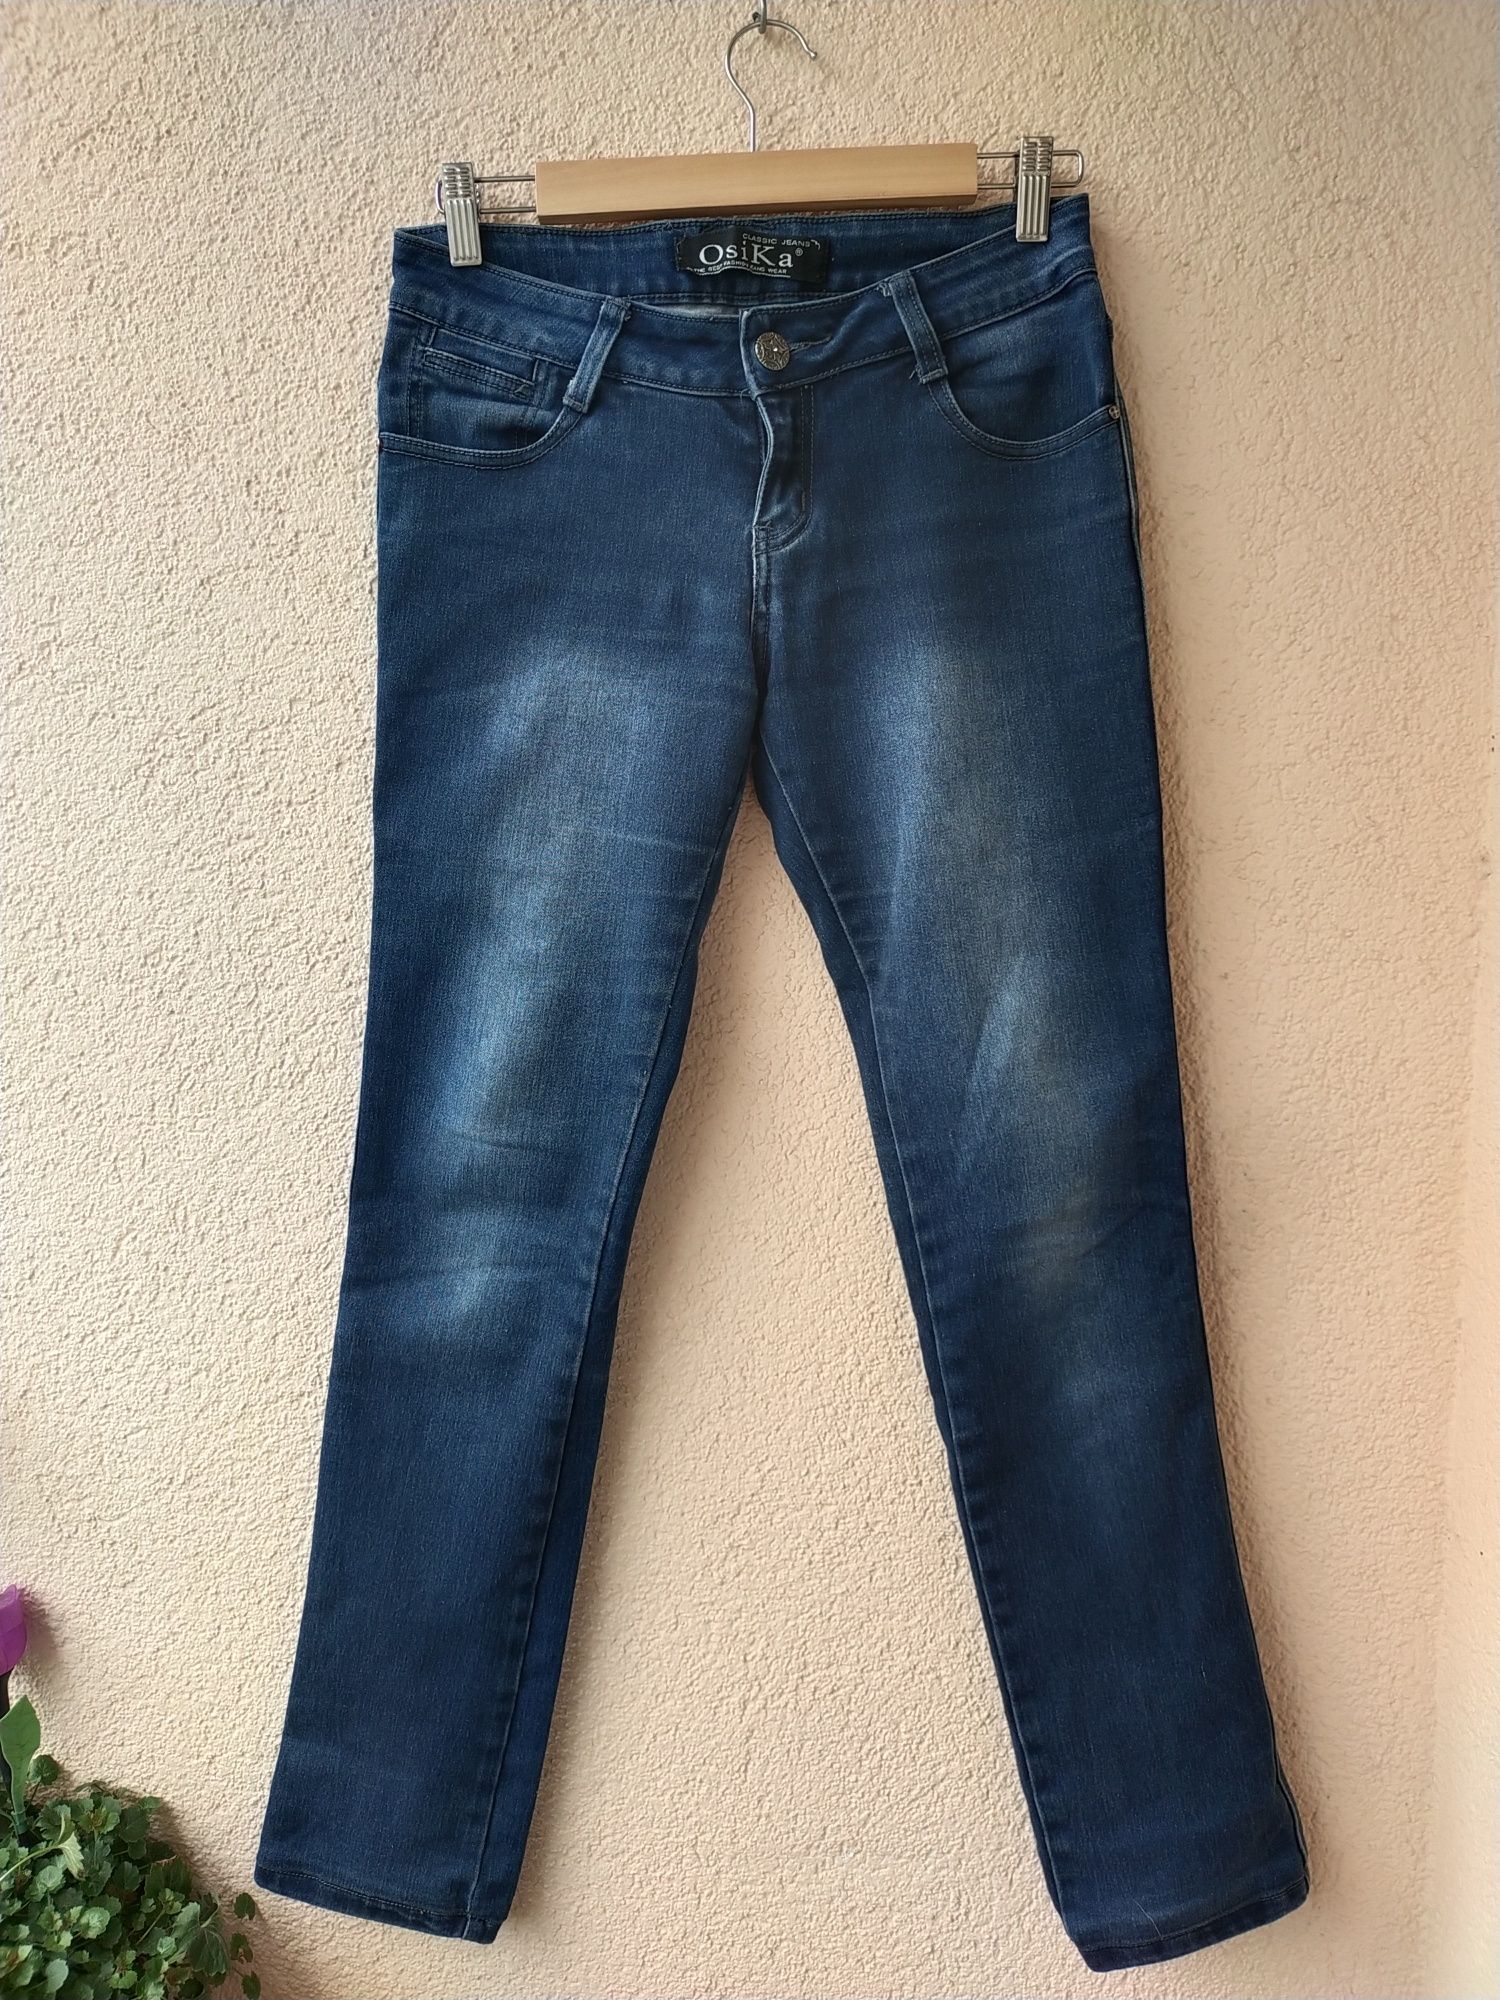 Spodnie dżinsowe Osika
Rozmiar 29
Szerokość w pasie 35 cm
Długość całk